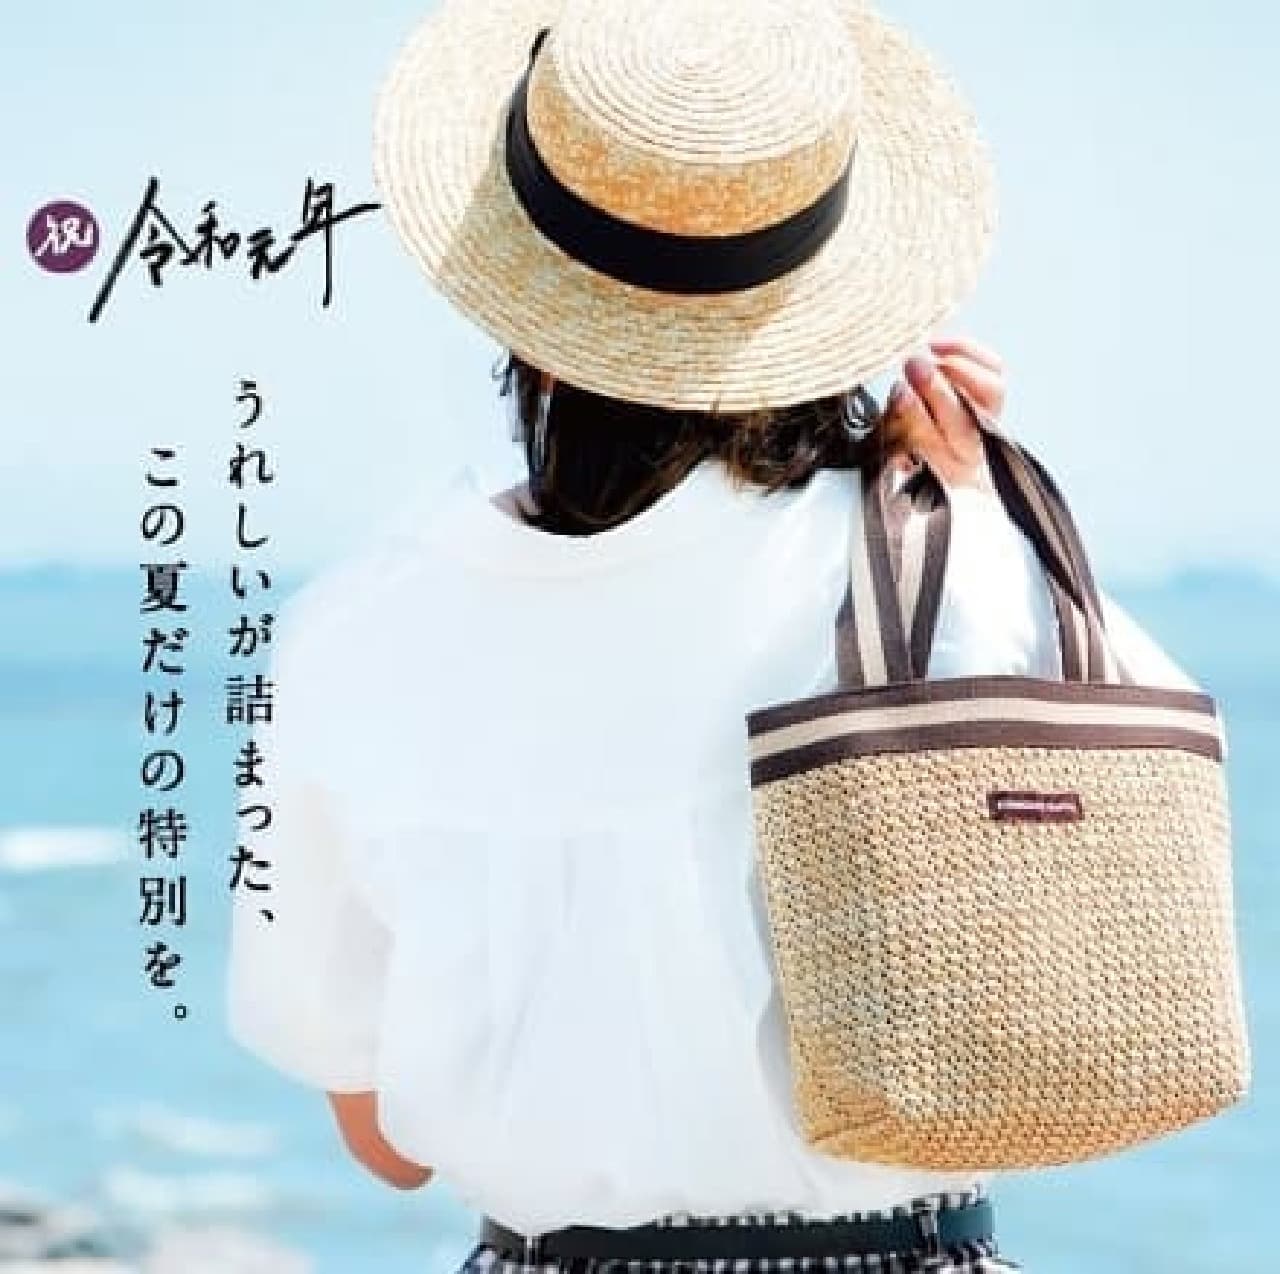 Komeda Coffee Shop "Summer Bag"